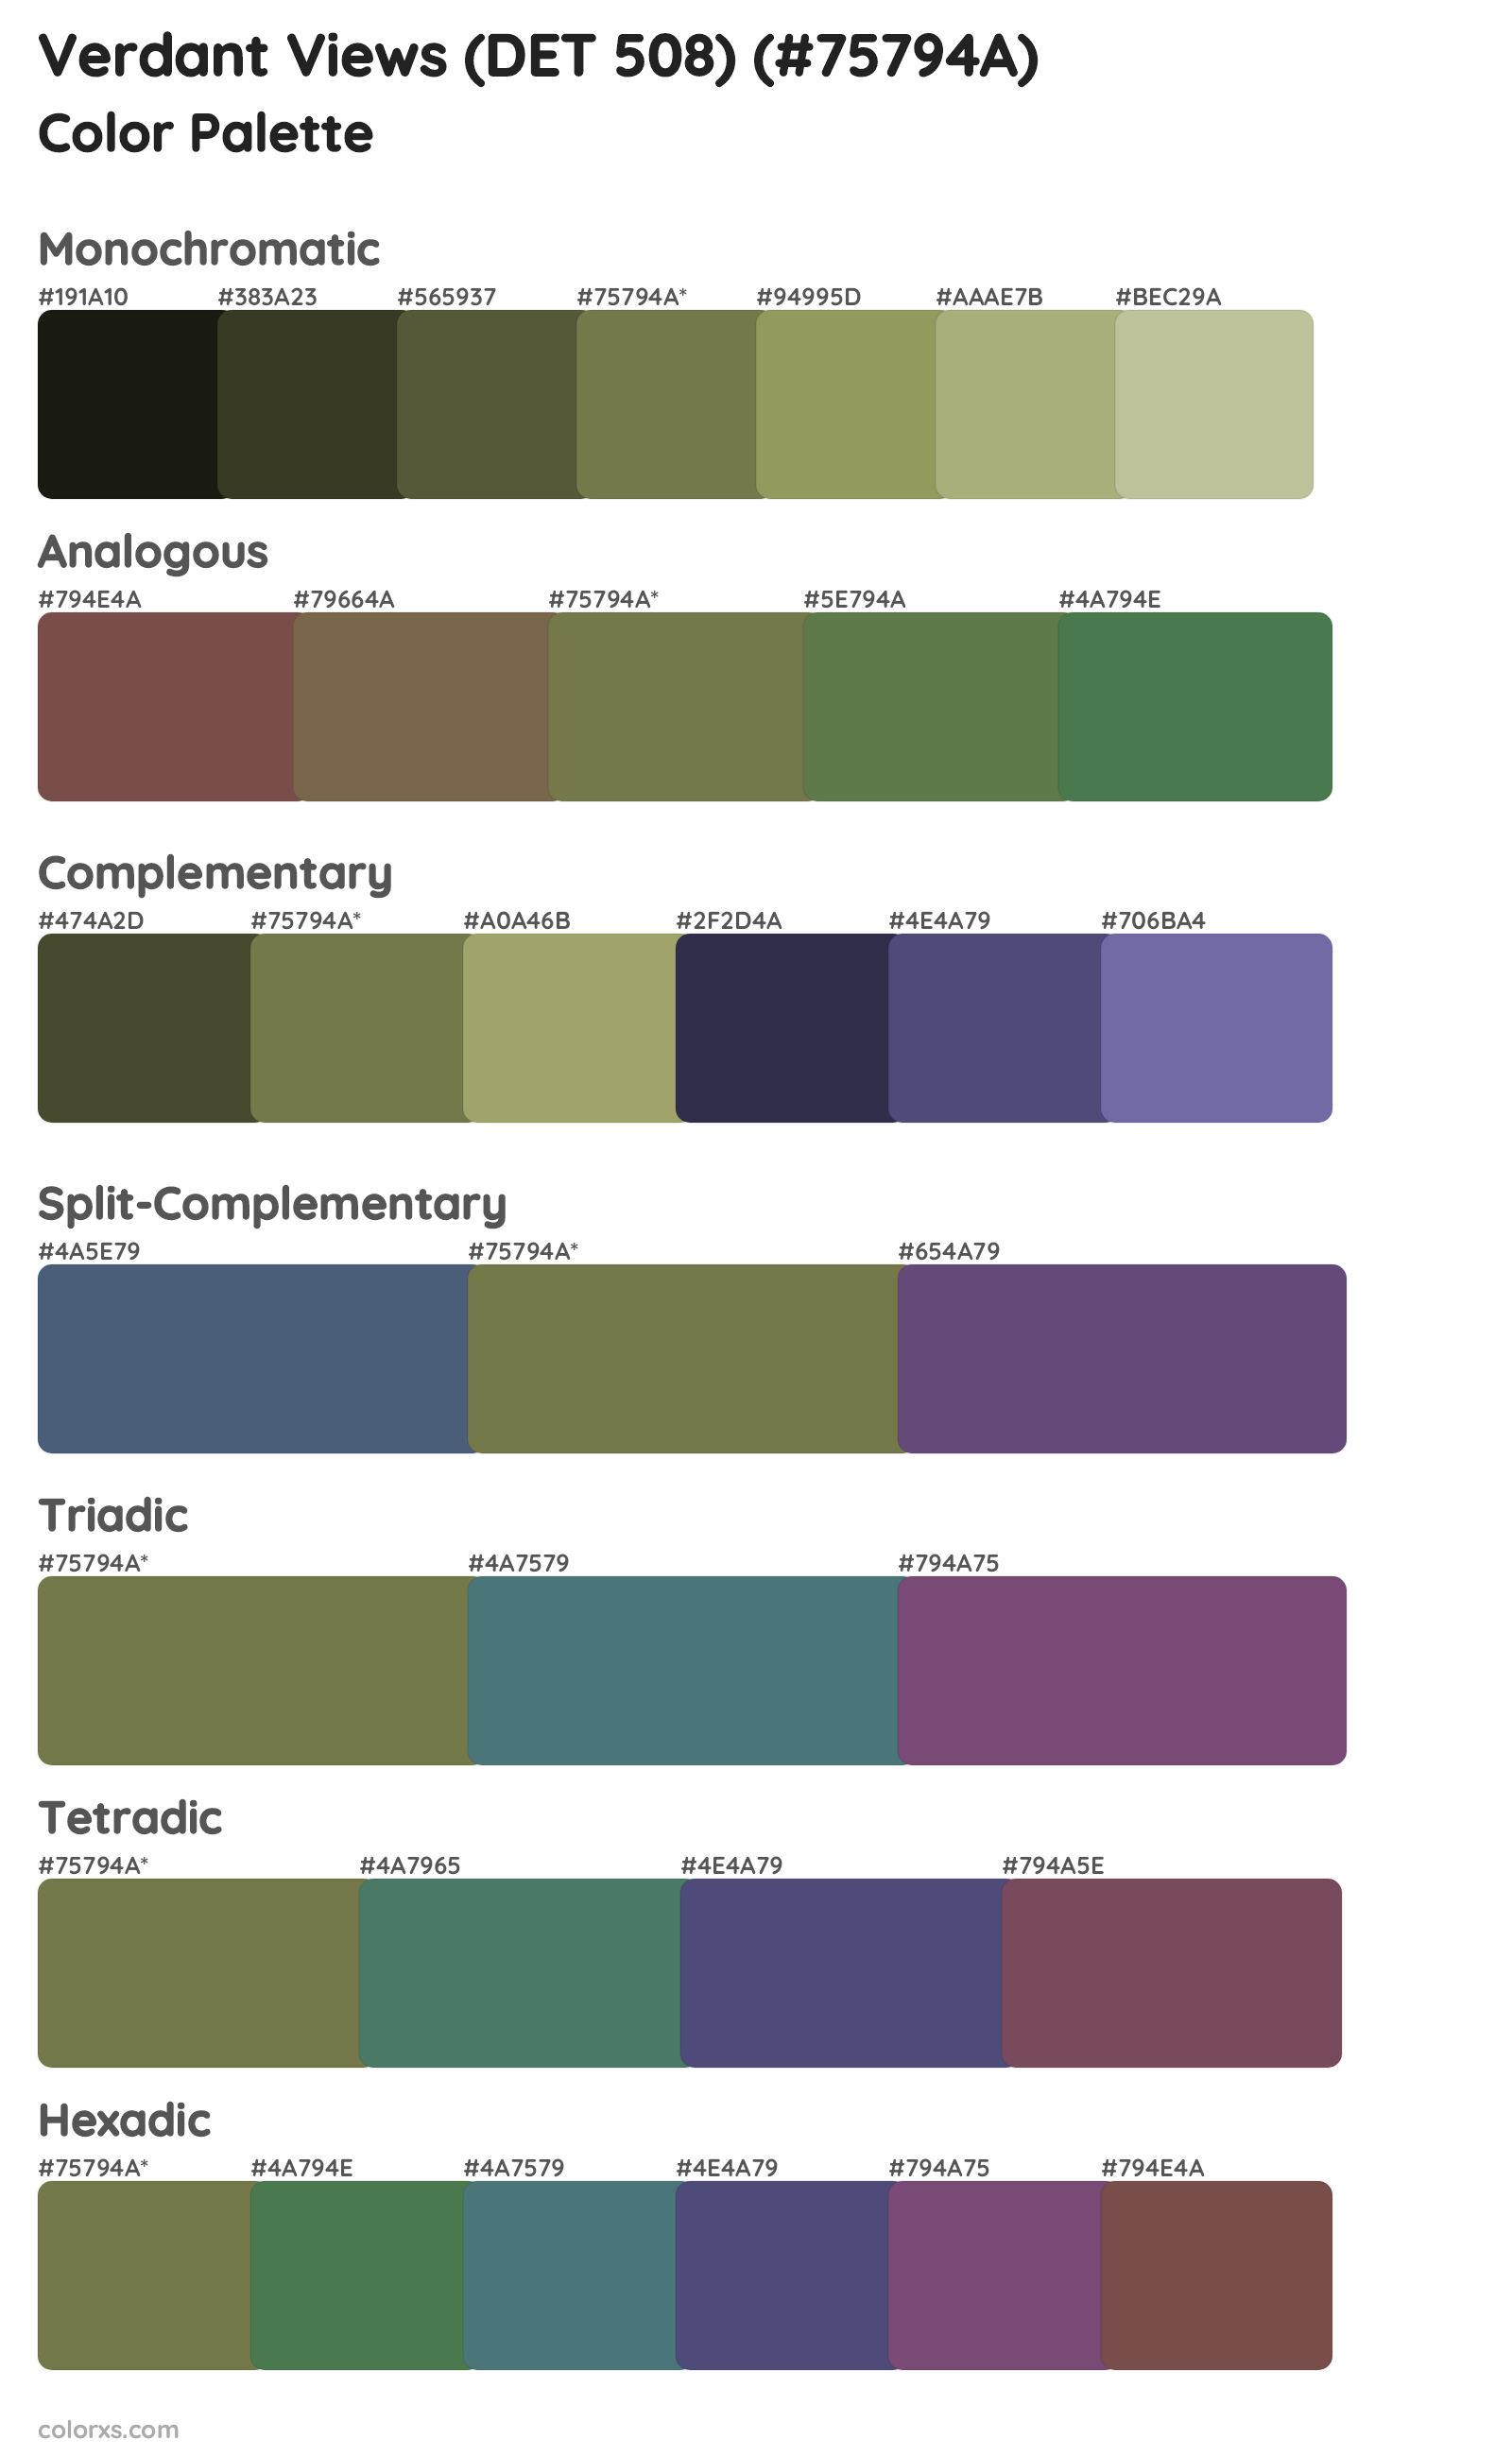 Verdant Views (DET 508) Color Scheme Palettes